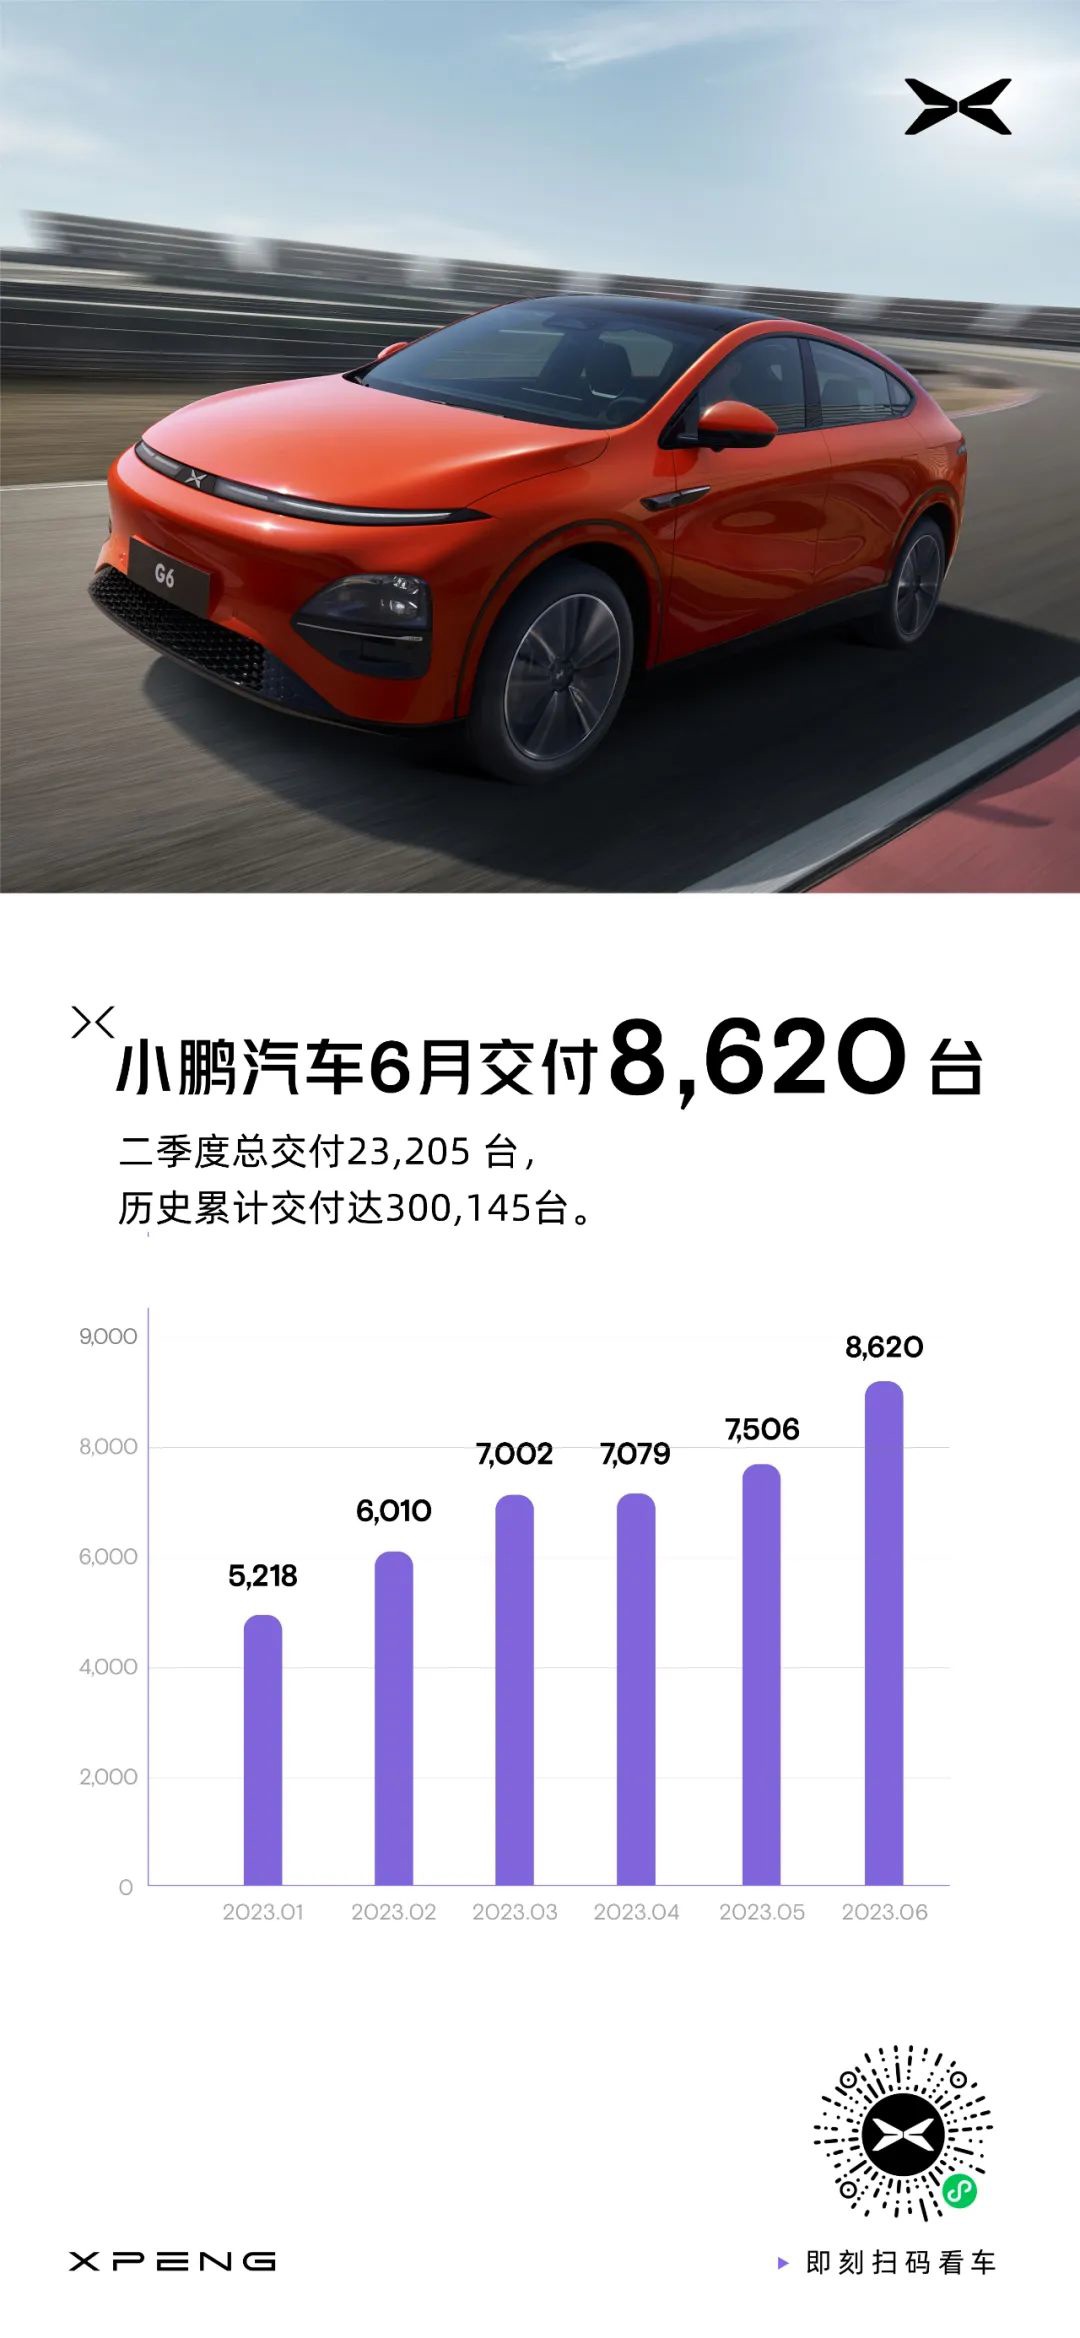 小鹏汽车 6 月交付新车 8620 台，环比增长 15%